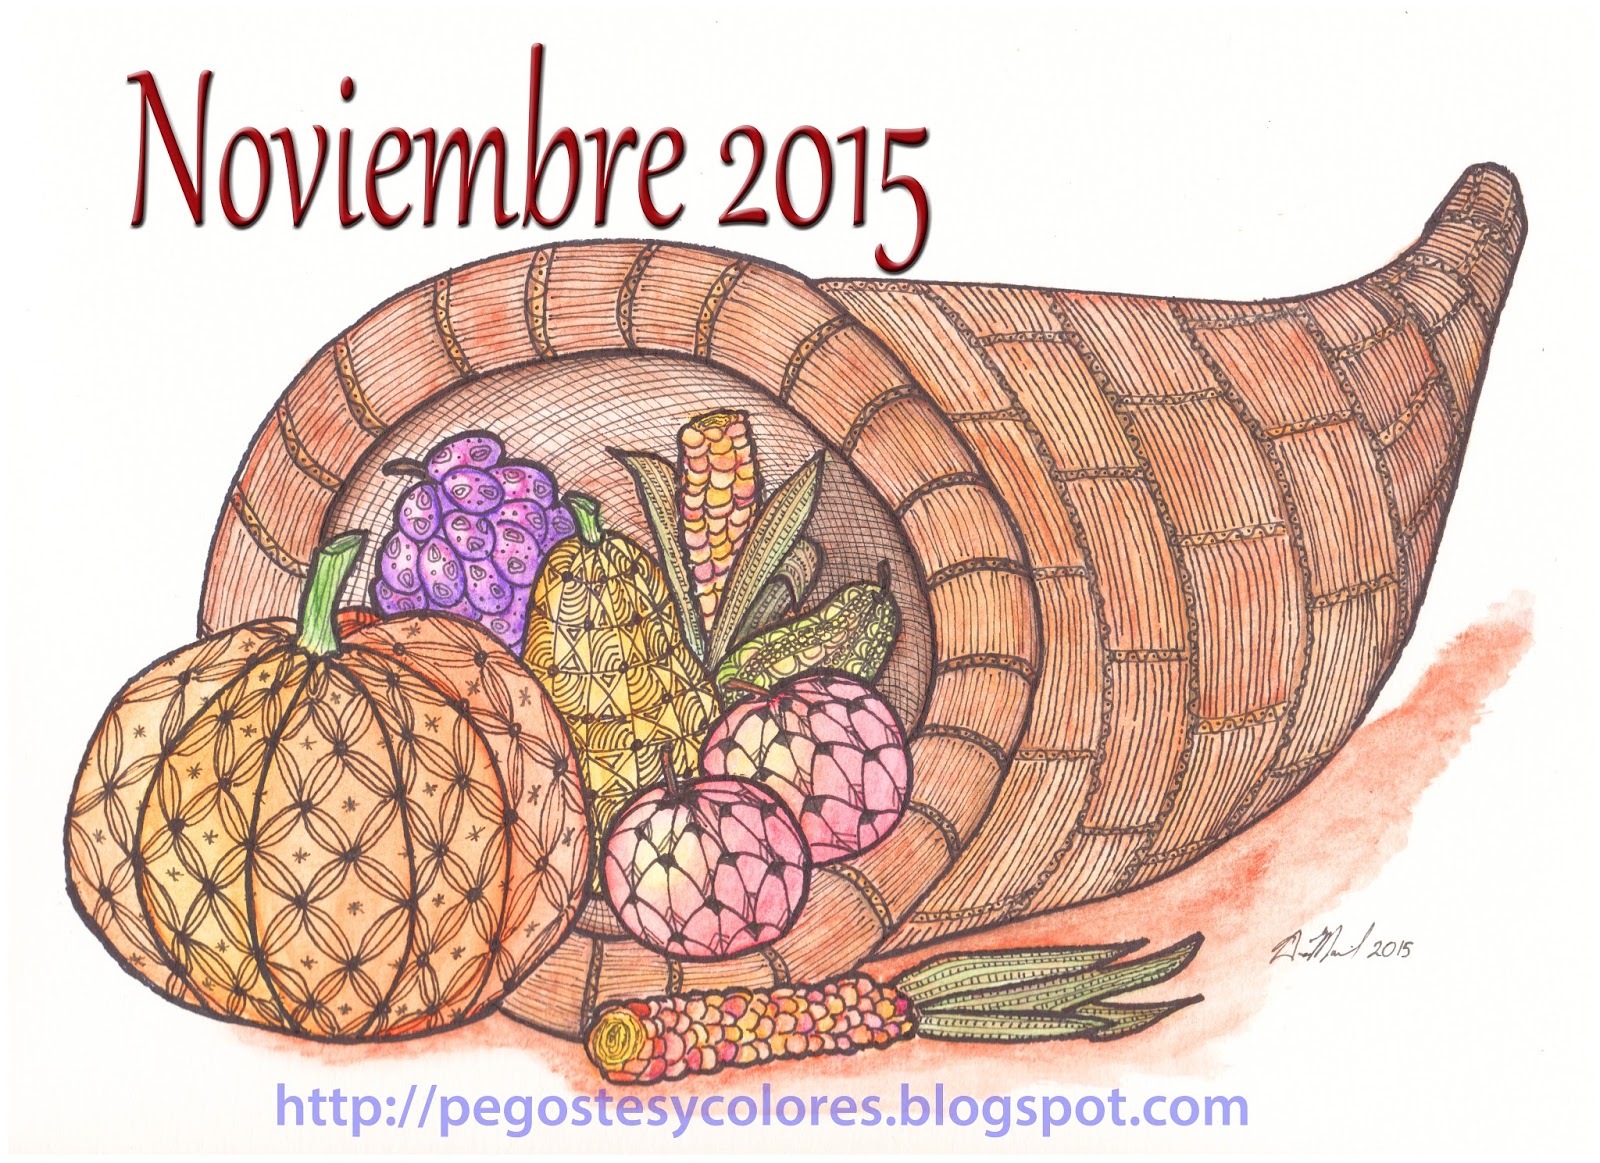 Pegostes y Colores: Portada de Noviembre 2015